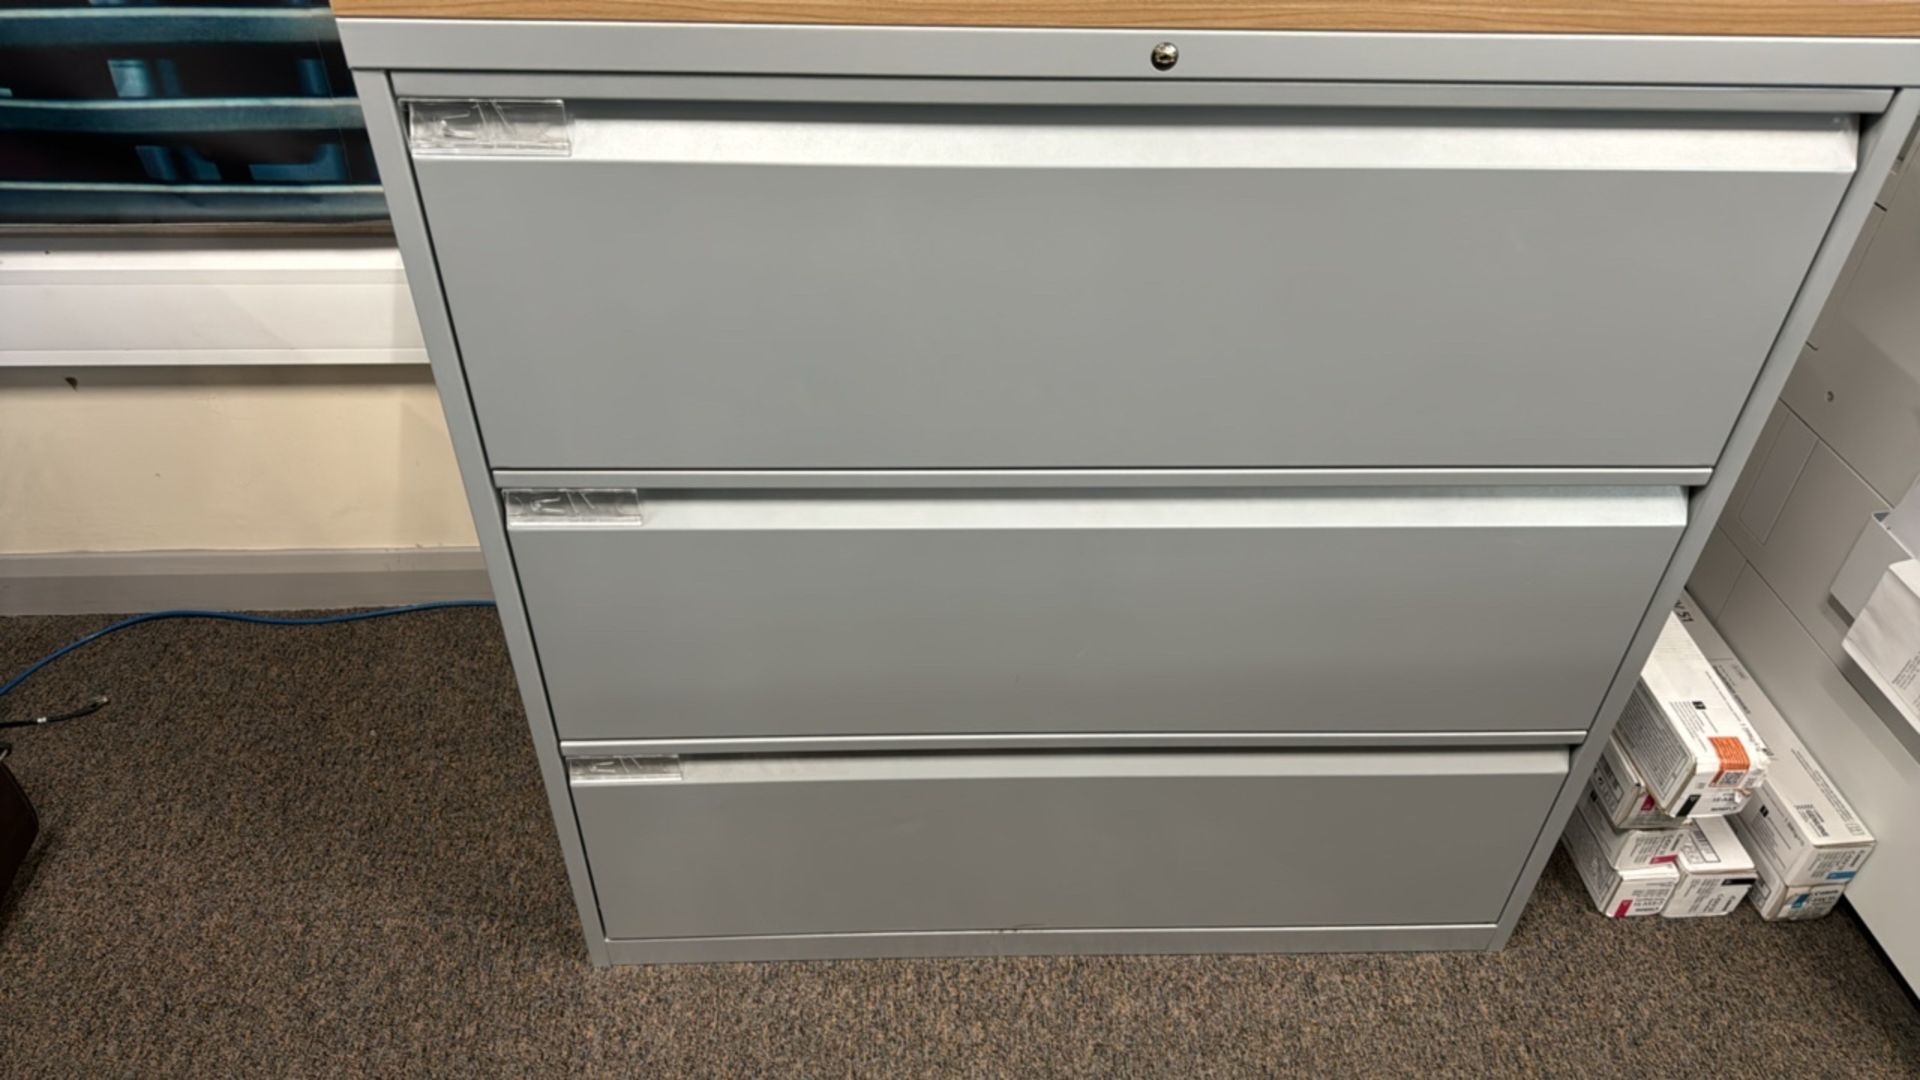 ref 214 - Bisley 3 Drawer Filing Cabinet - Image 3 of 4